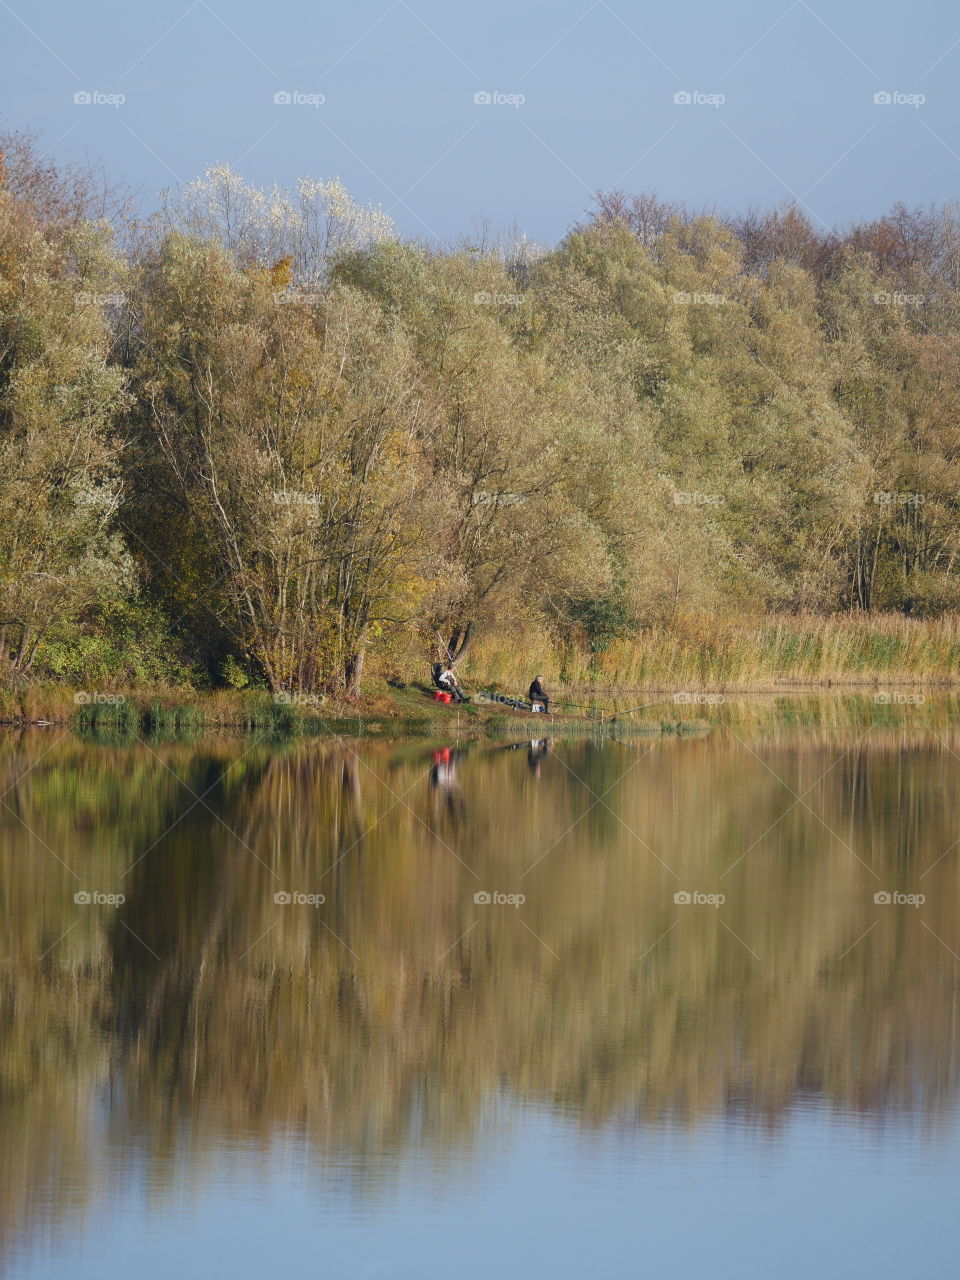 Two anglers fishing on a lake